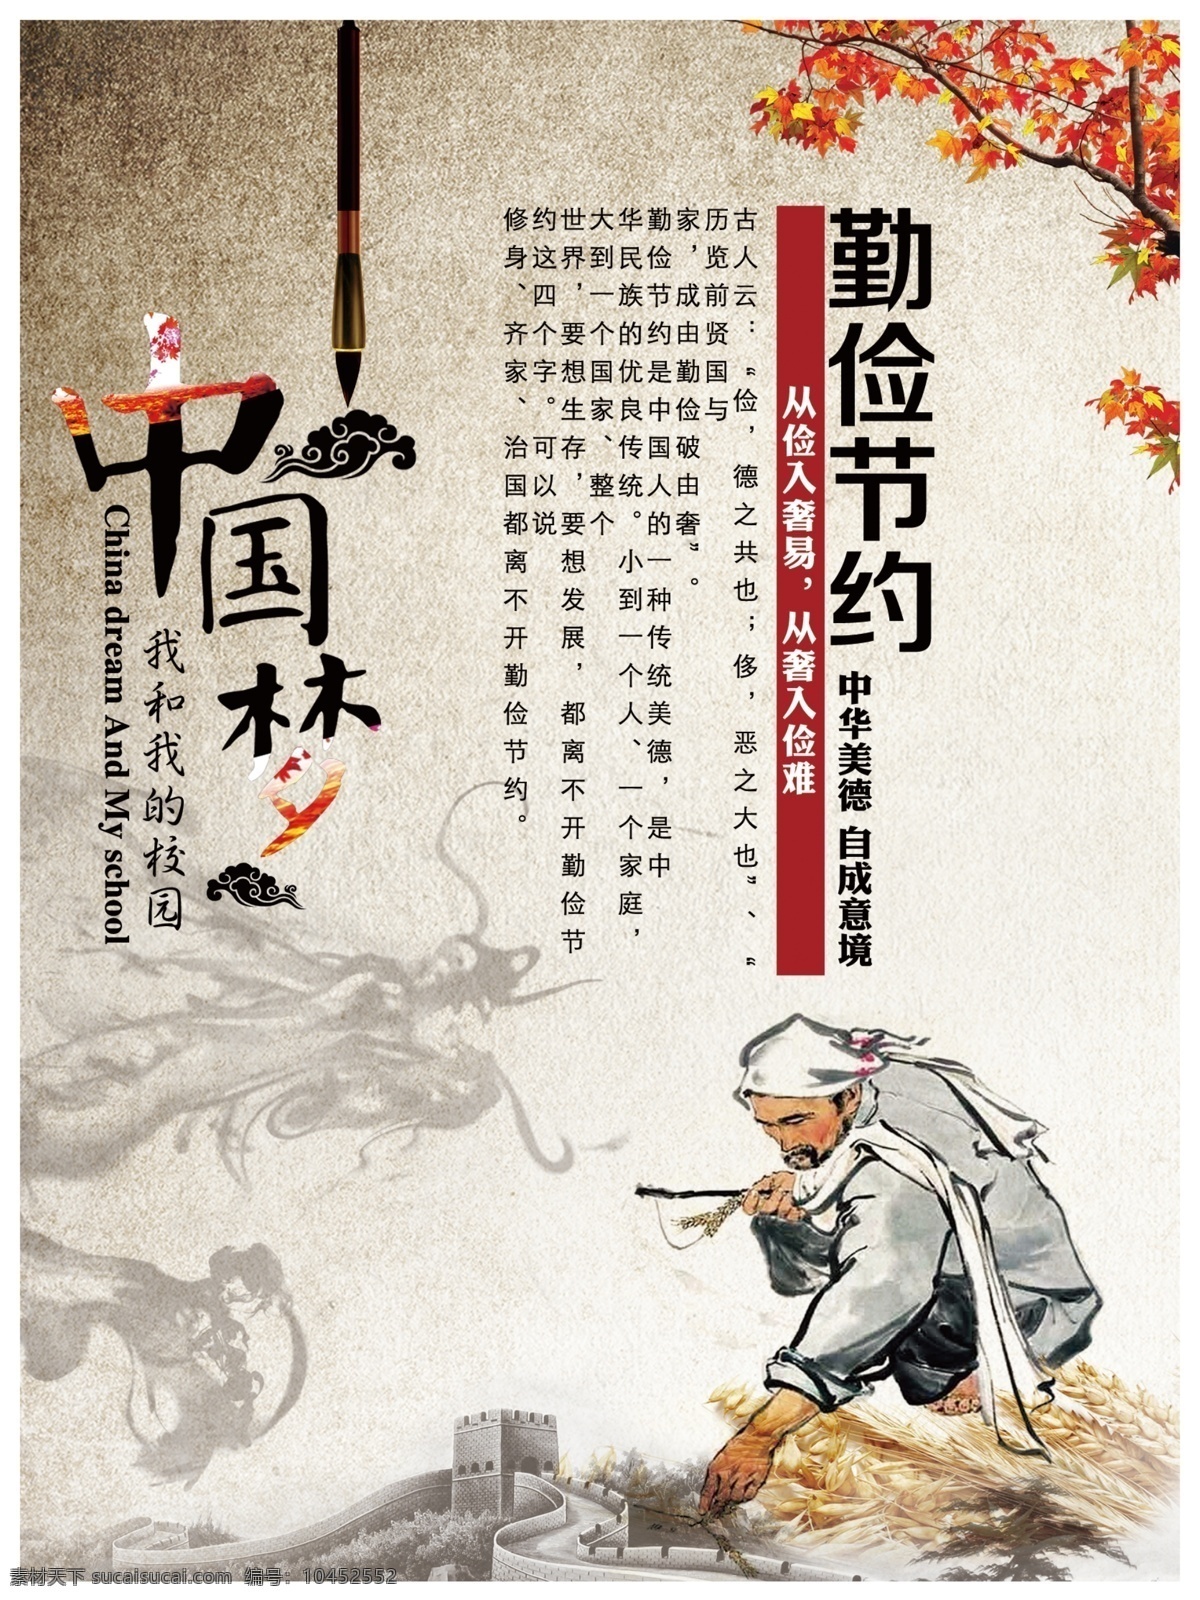 中国 古典 风 校园文化 标语 古典风 校园 文化 文化艺术 传统文化 白色